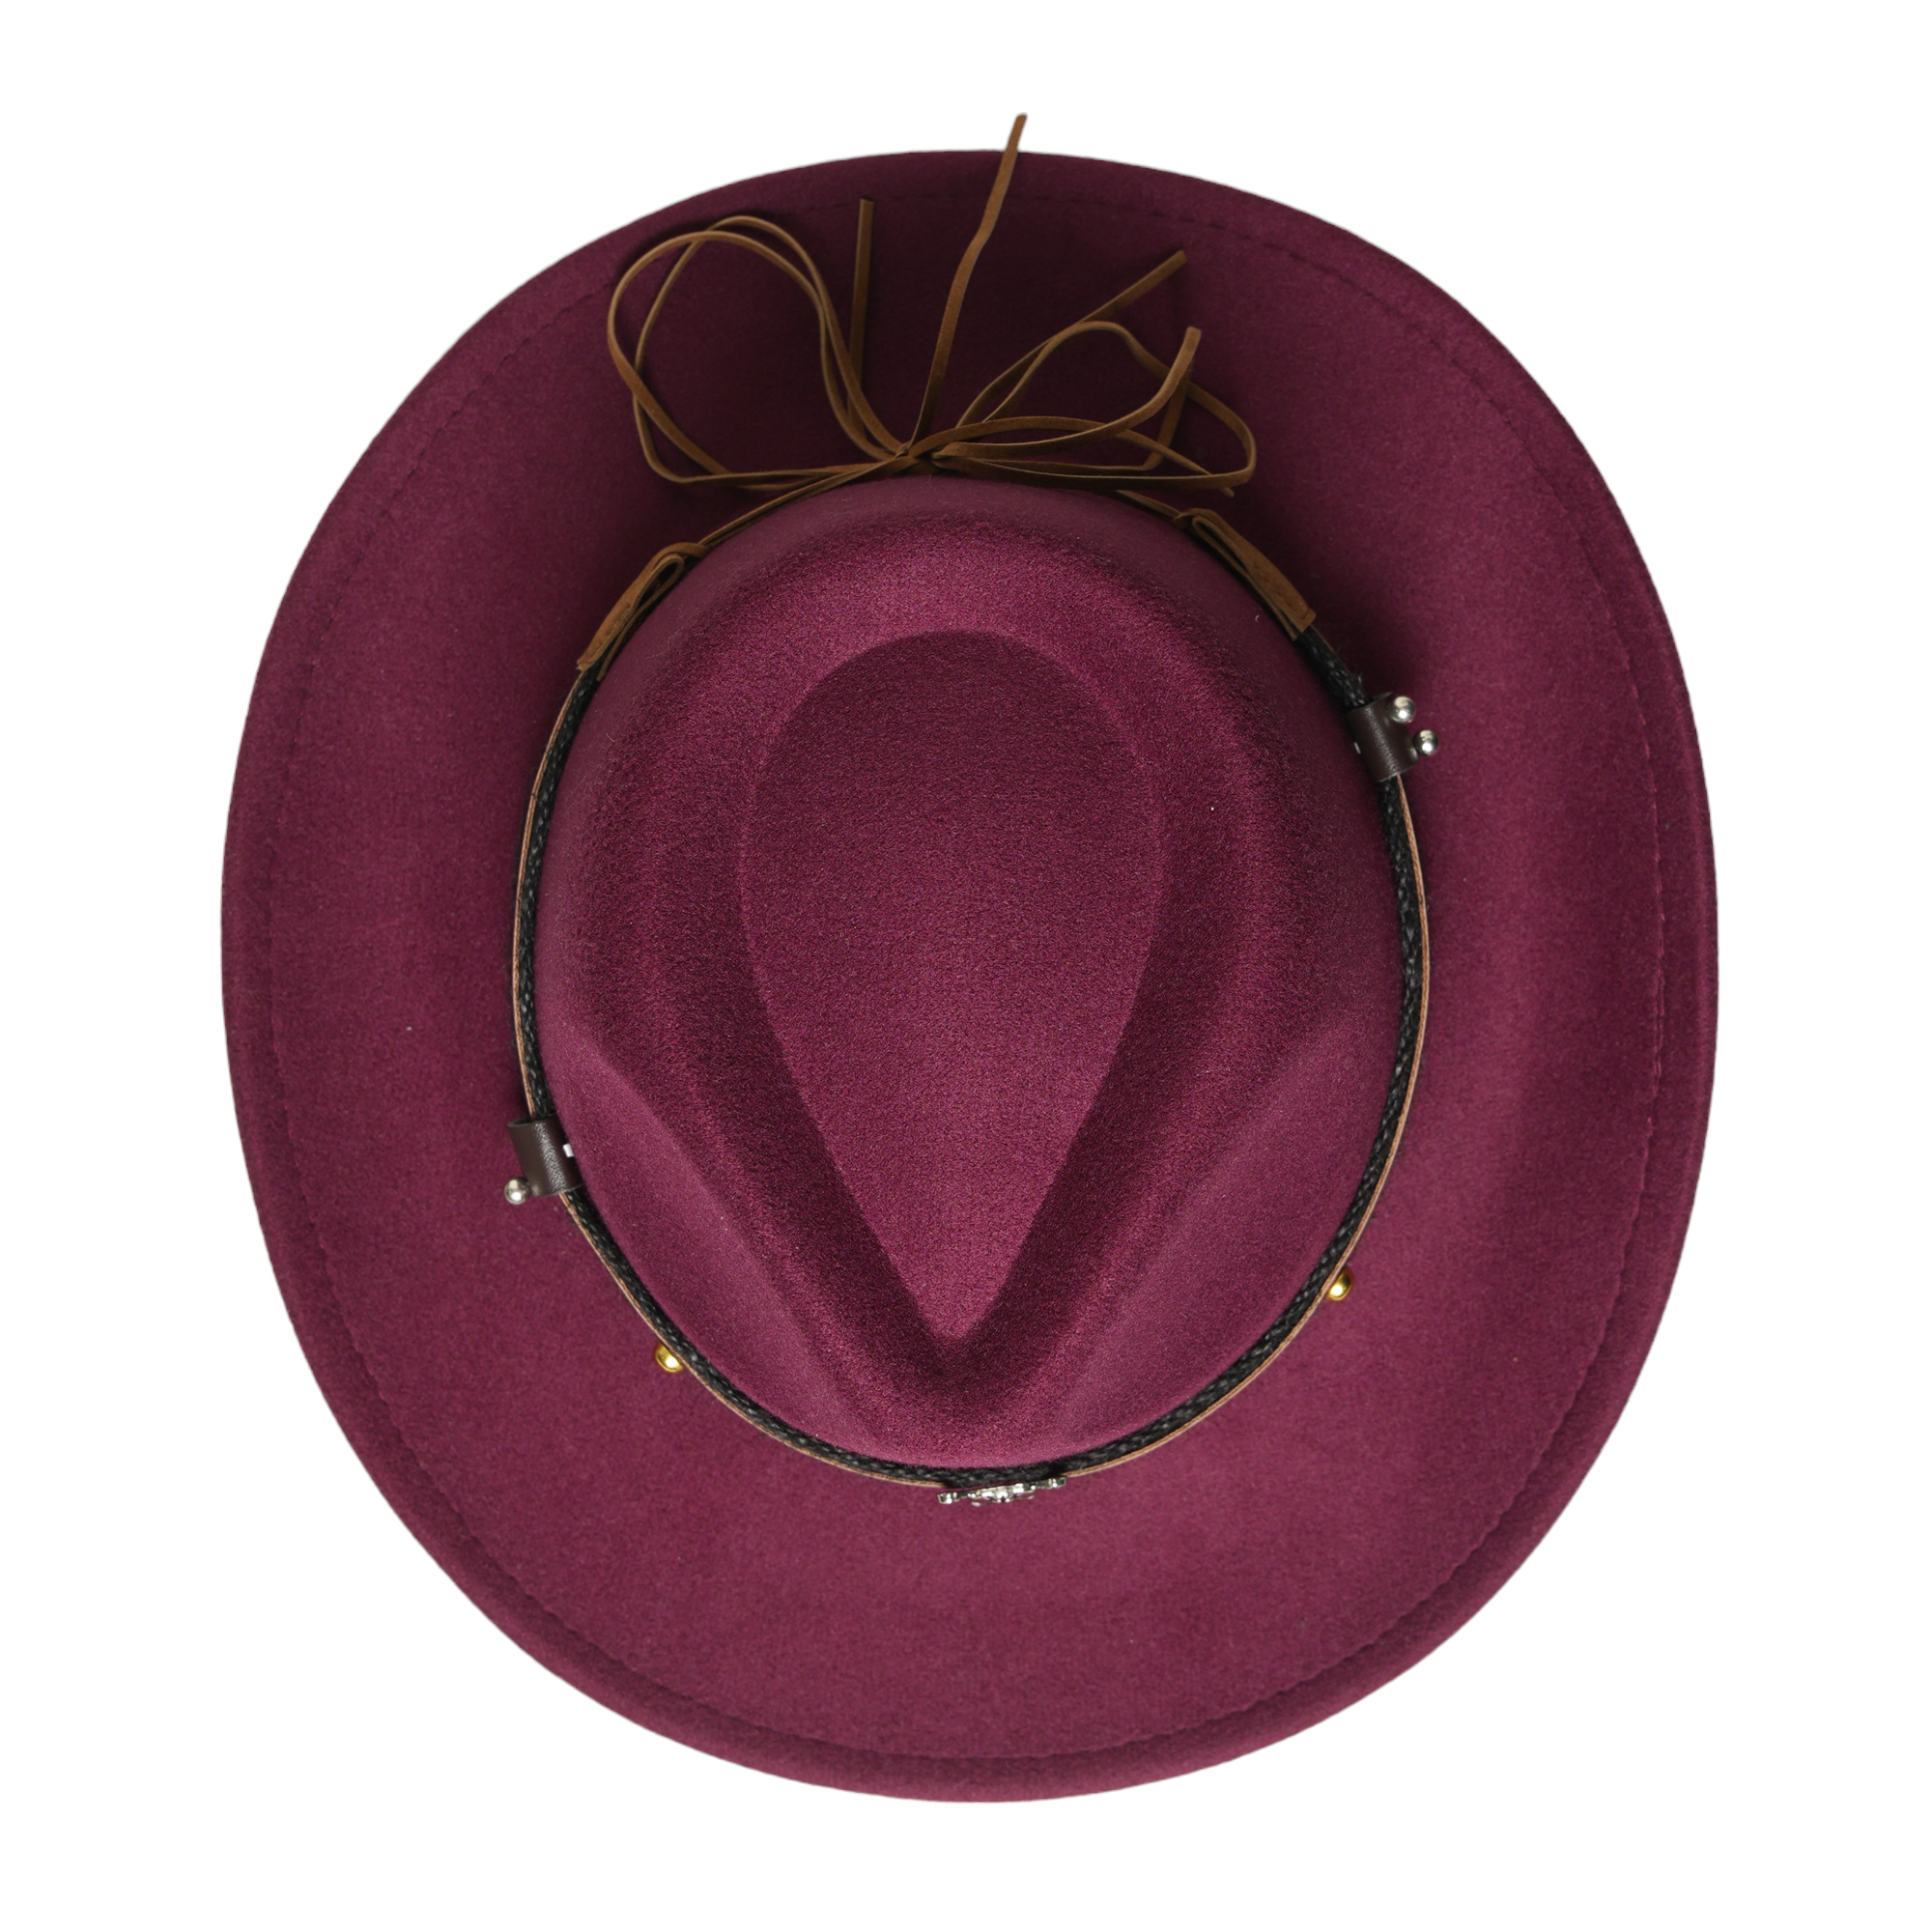 Chokore American Cowhead Fedora Hat (Burgundy)